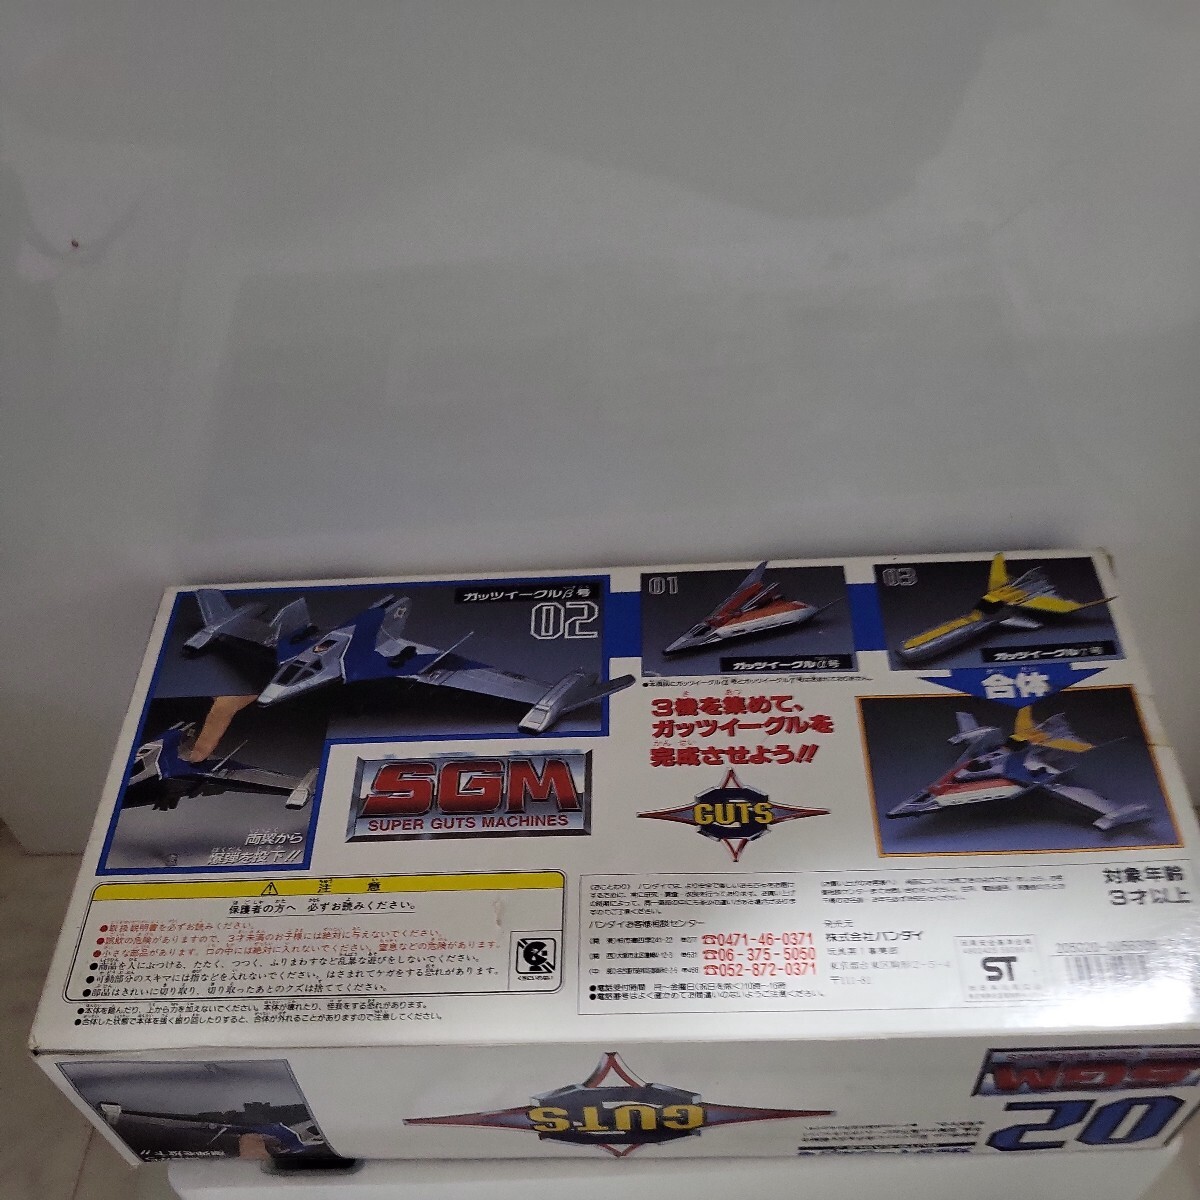 1997 год подлинная вещь po шестерня ka серии SGM-02 Guts Eagle β номер Ultraman Dyna Bandai детали отсутствует сделано в Японии pohinika сплав 